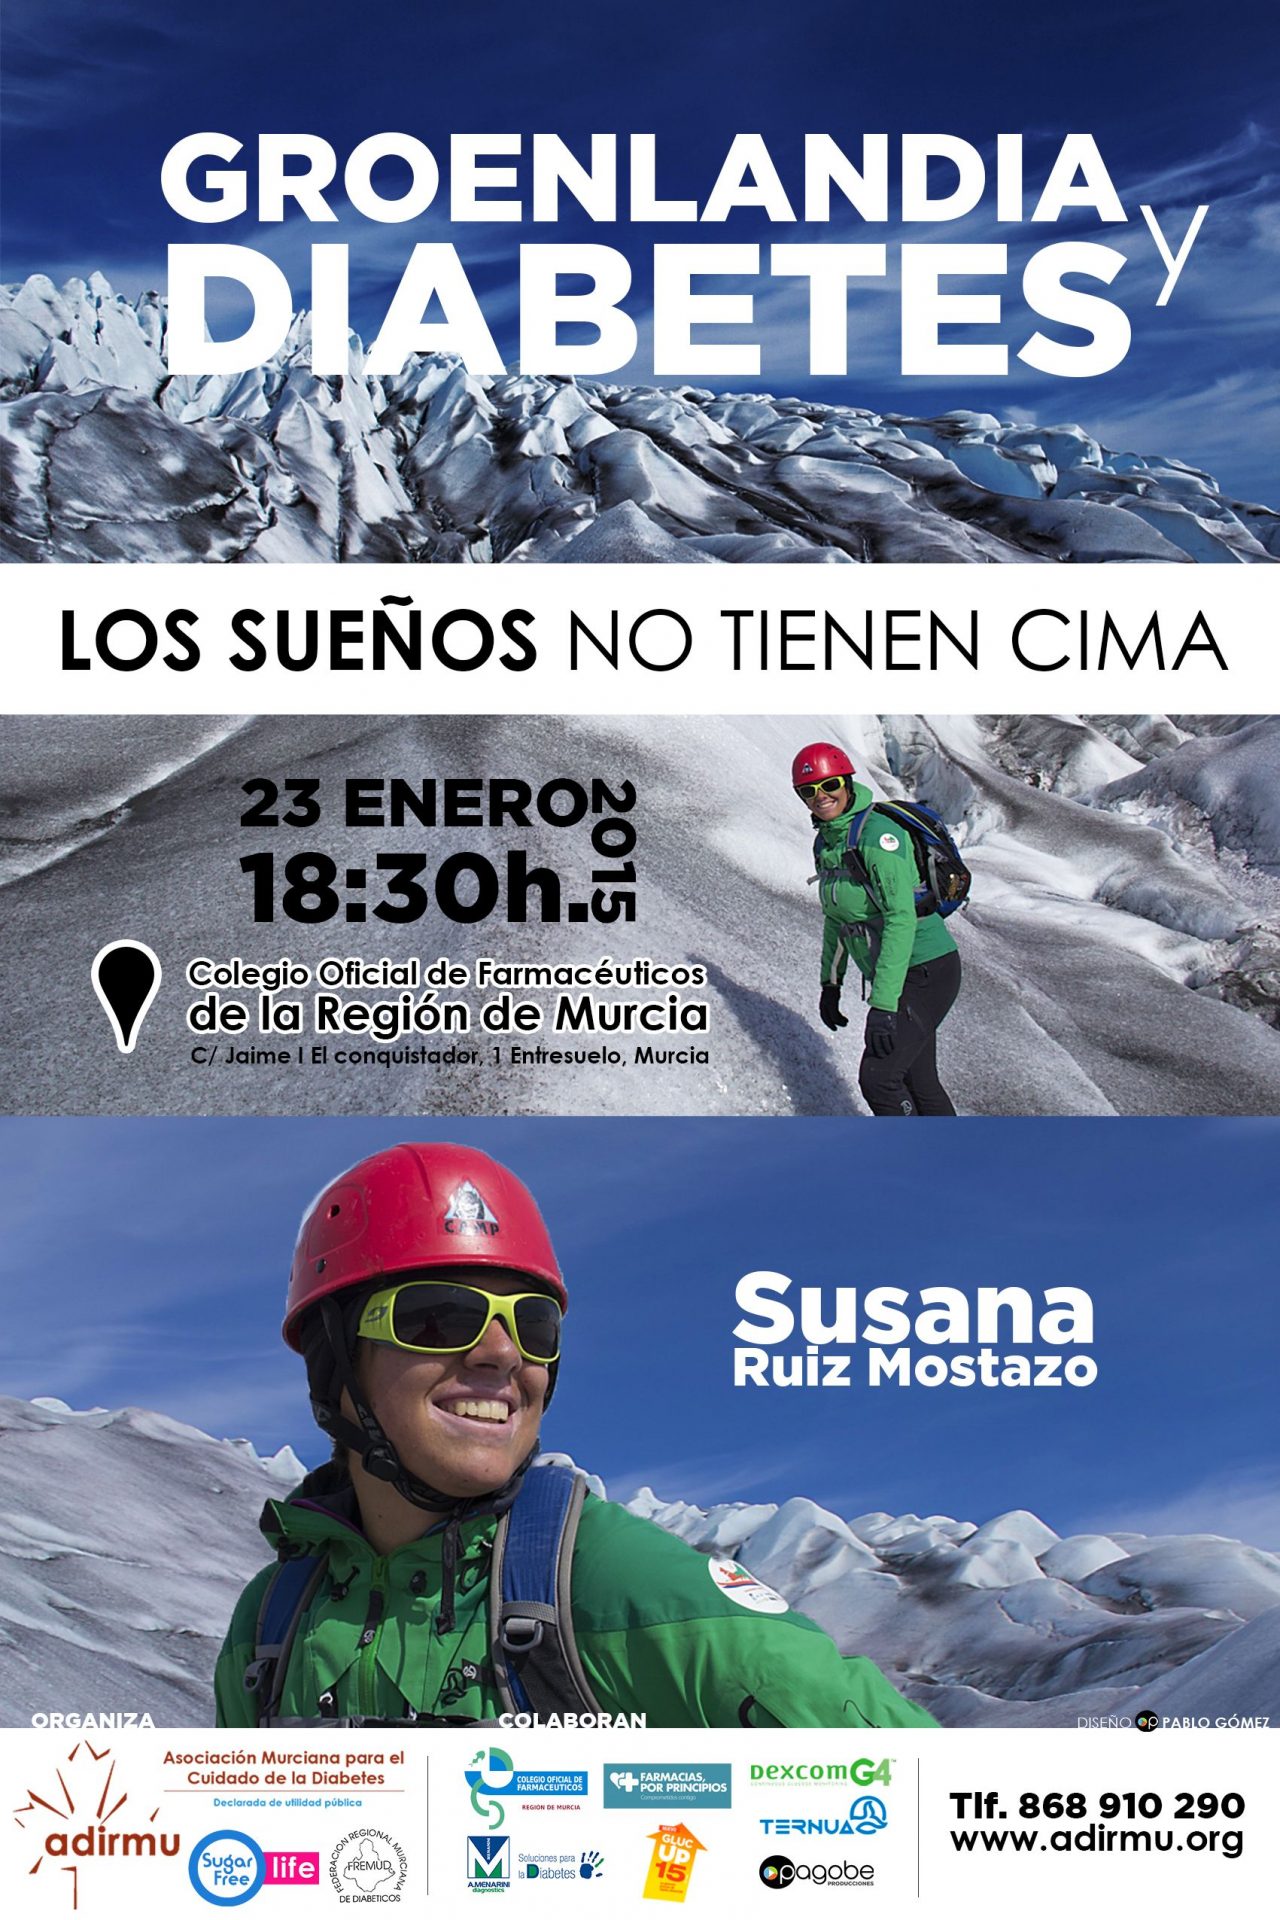 Susana Ruiz en Murcia, “Groenlandia y Diabetes: Los sueños no tienen cima”